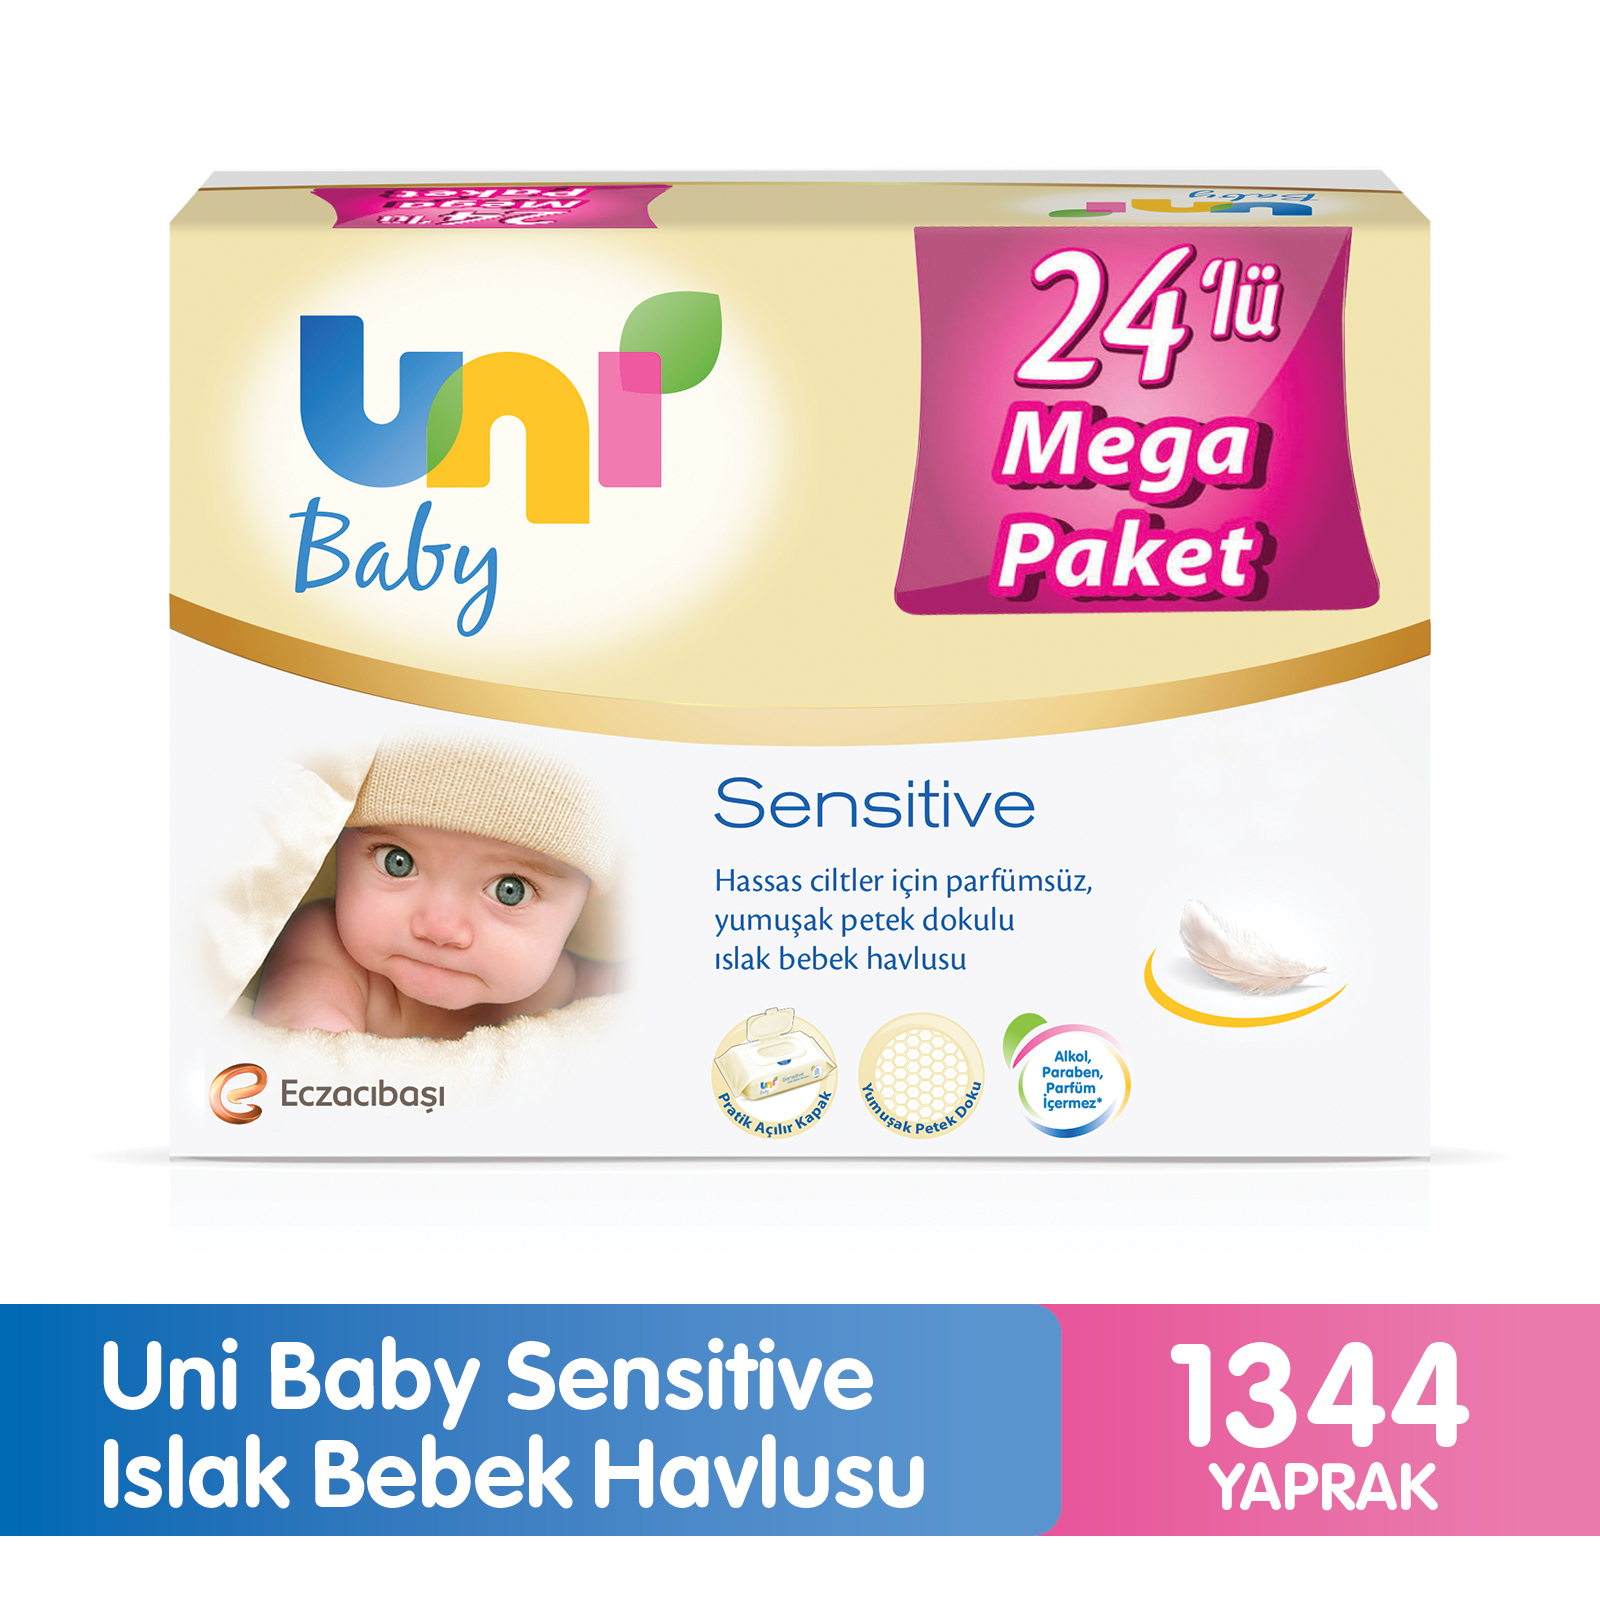 Uni Baby Sensitive Islak Bebek Havlusu 24'Lü Mega Paket 1344'Lü